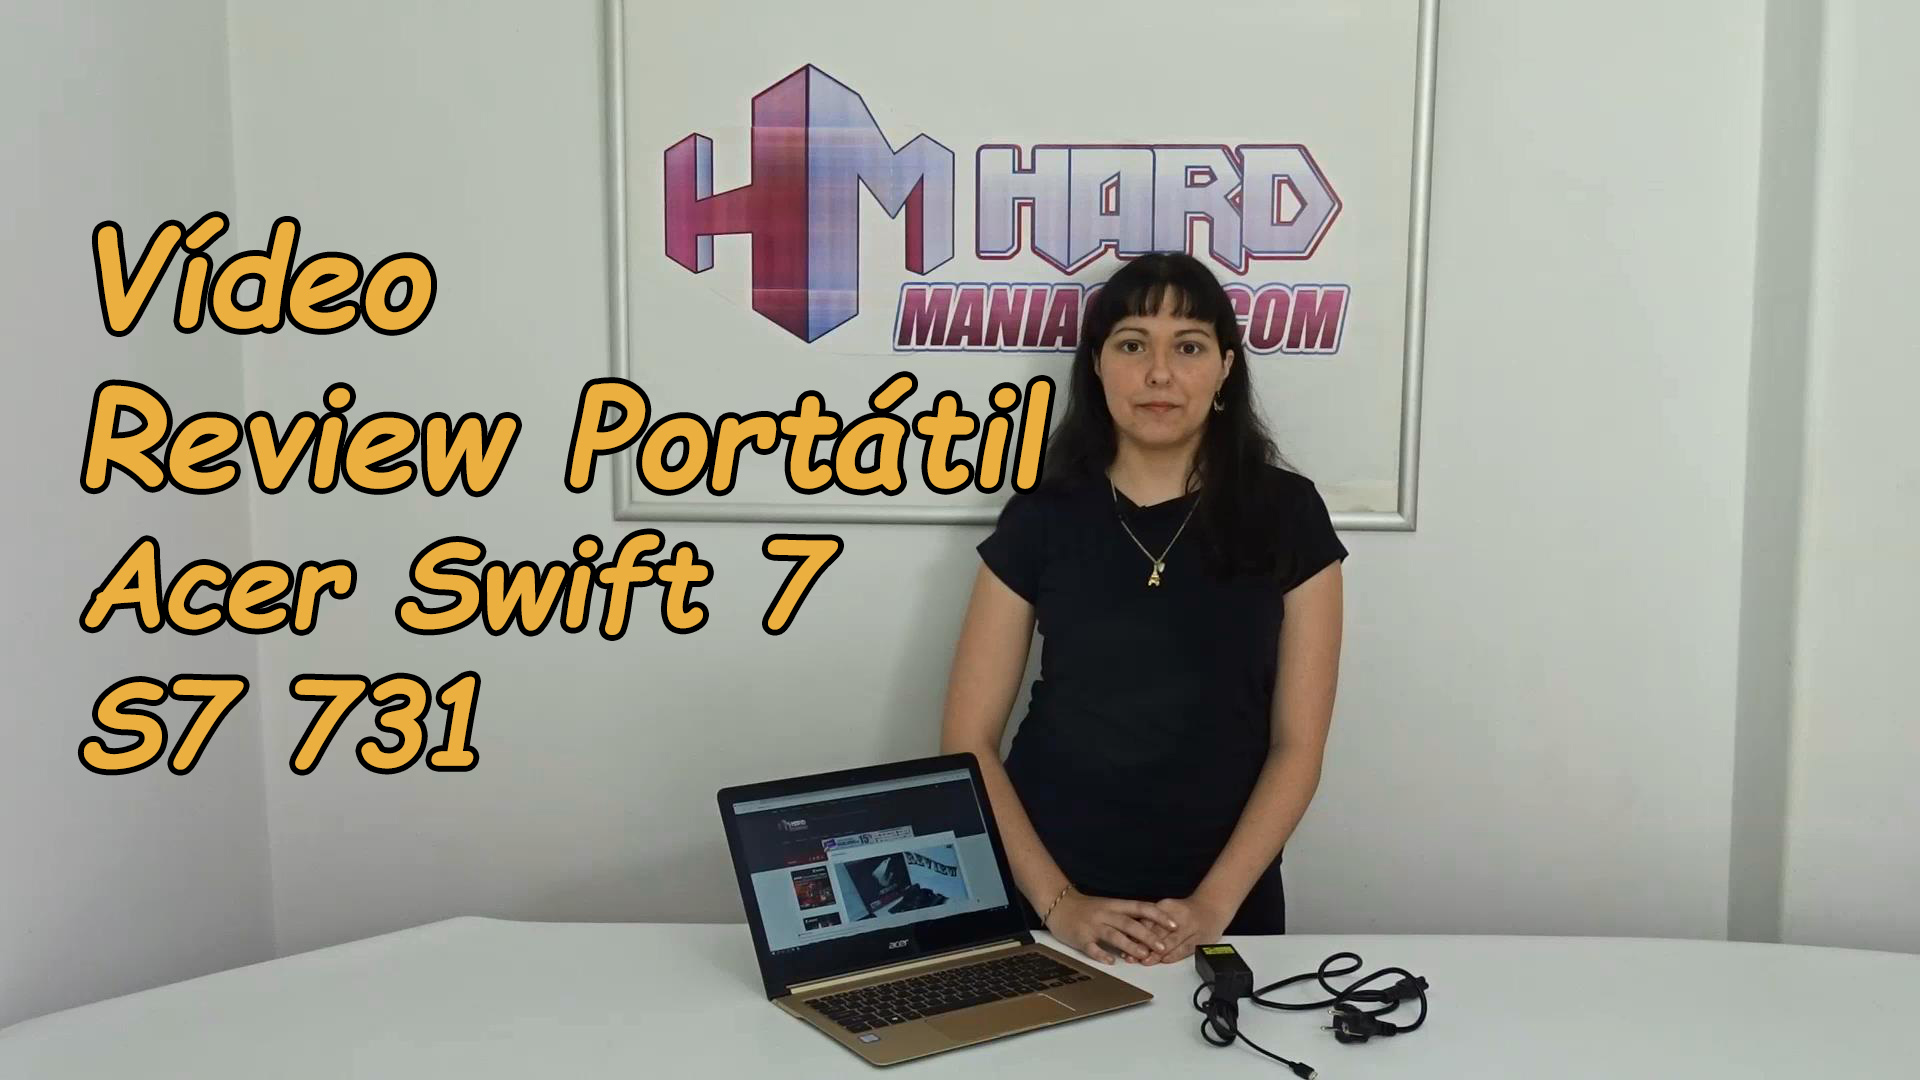 Vídeo review Portátil Acer Swift 7 S7 731